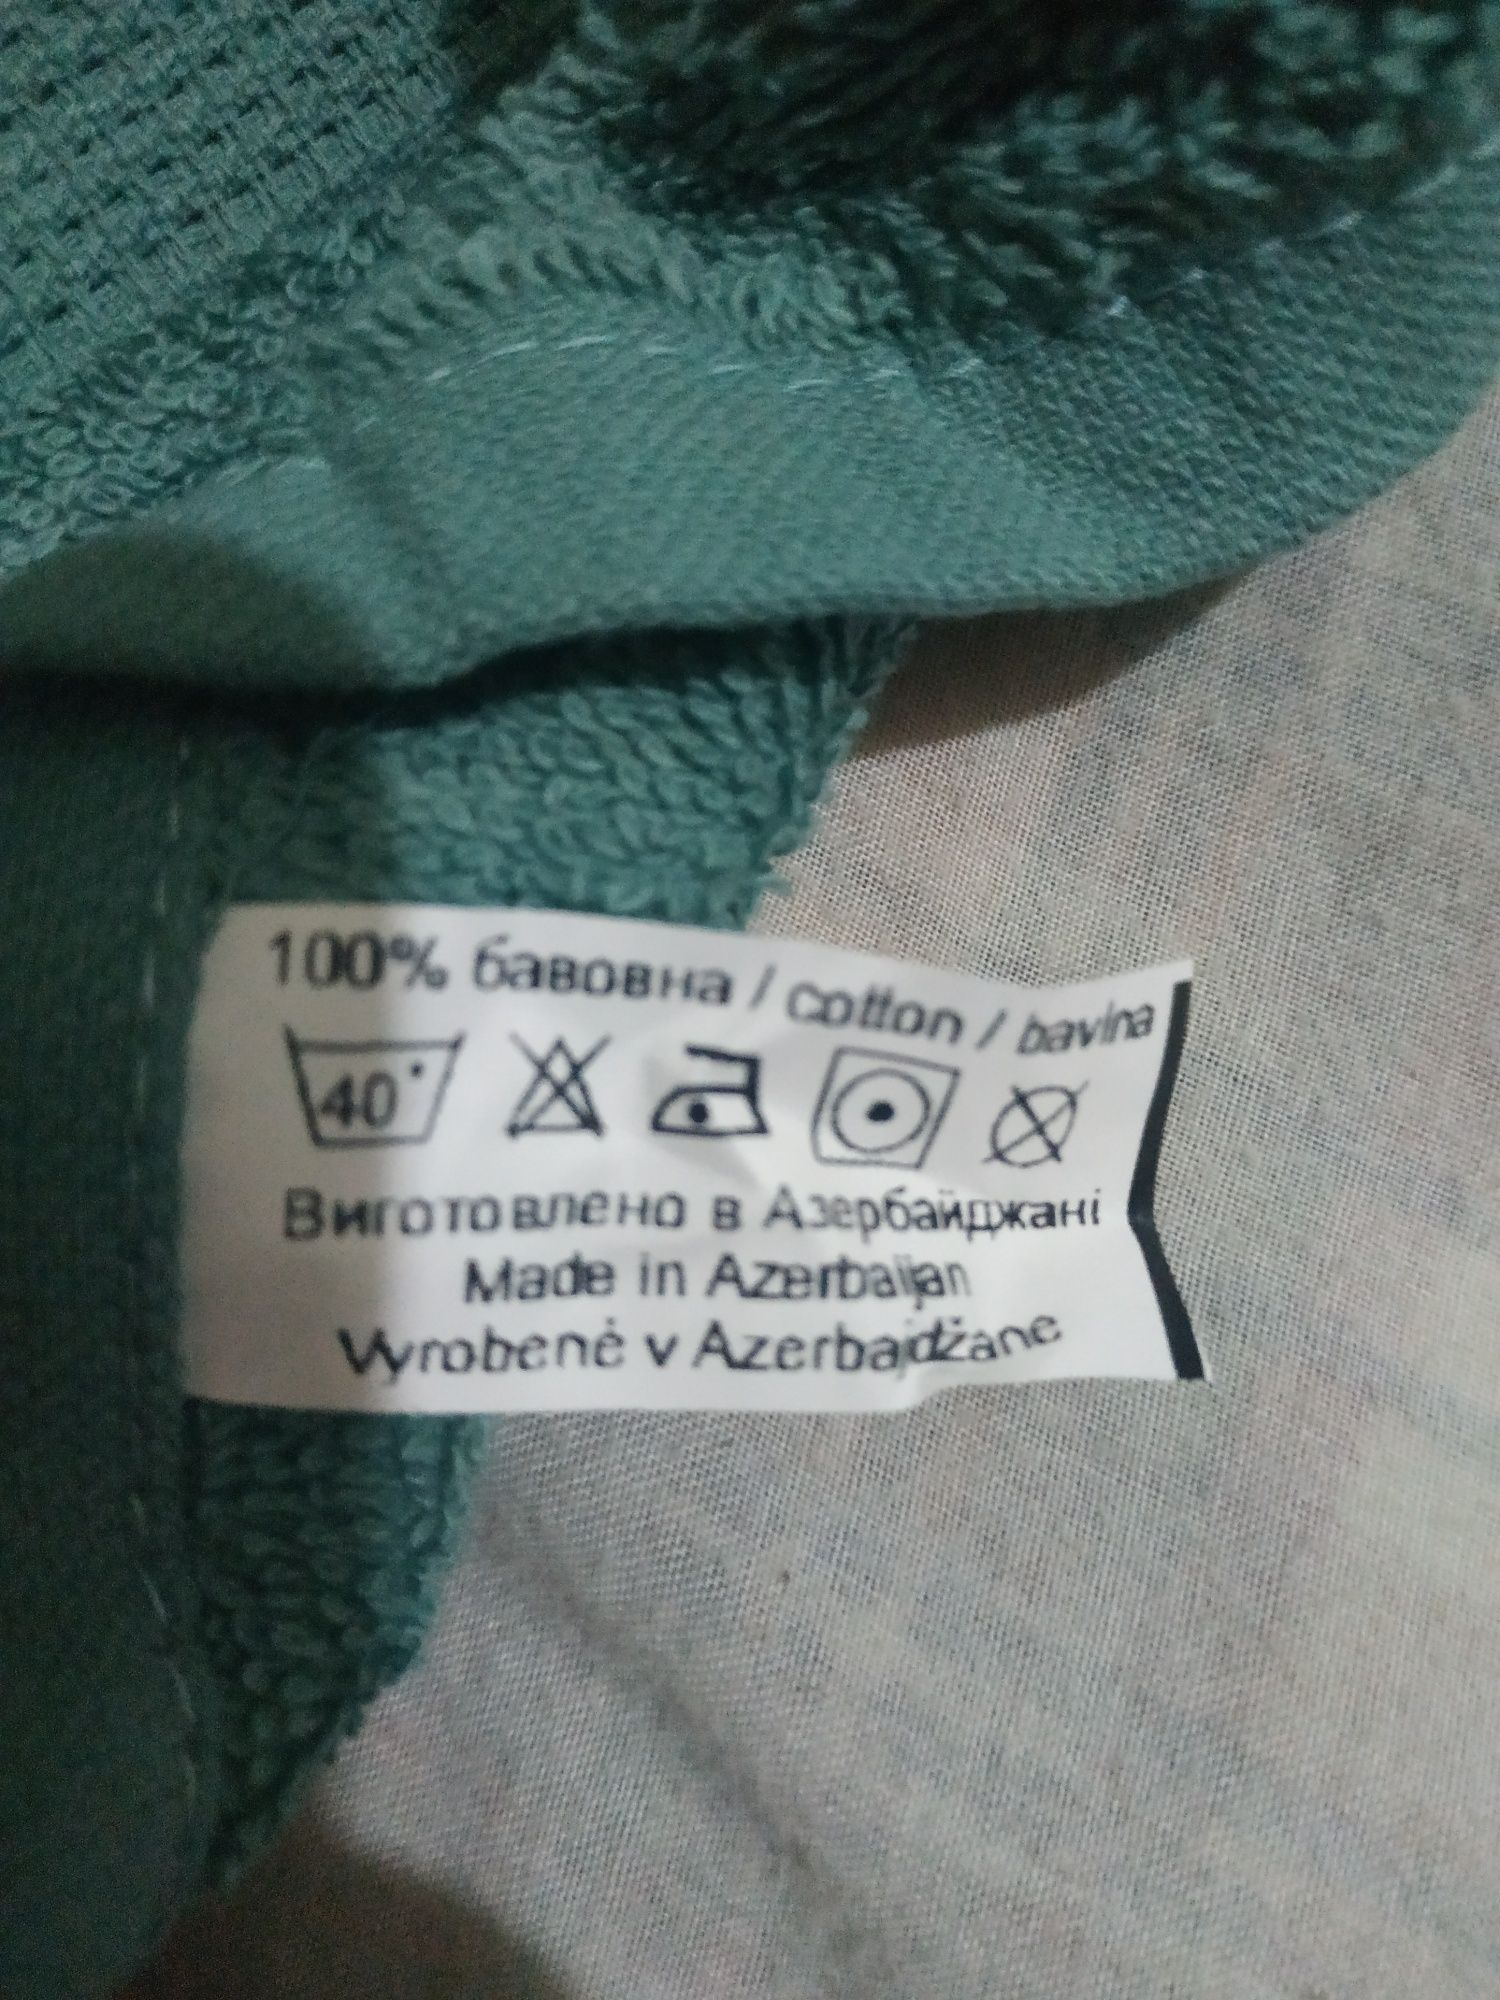 Полотенца махровые производства Азербайджан